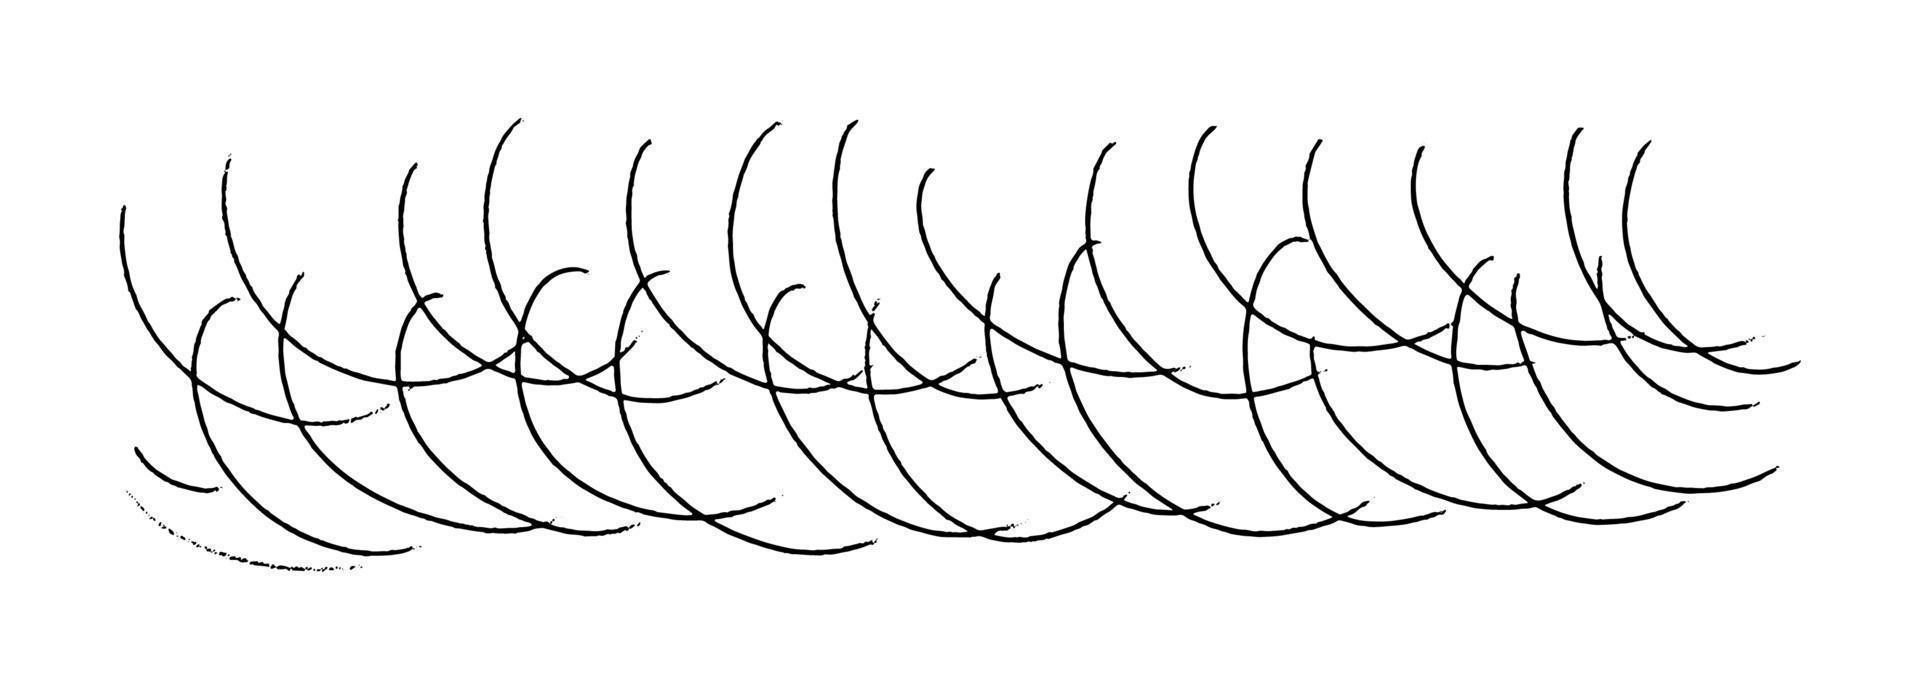 ilustração em vetor de linhas curvas. traços de doodle em arco desenhados à mão. textura de lápis de fundo horizontal isolada no branco.